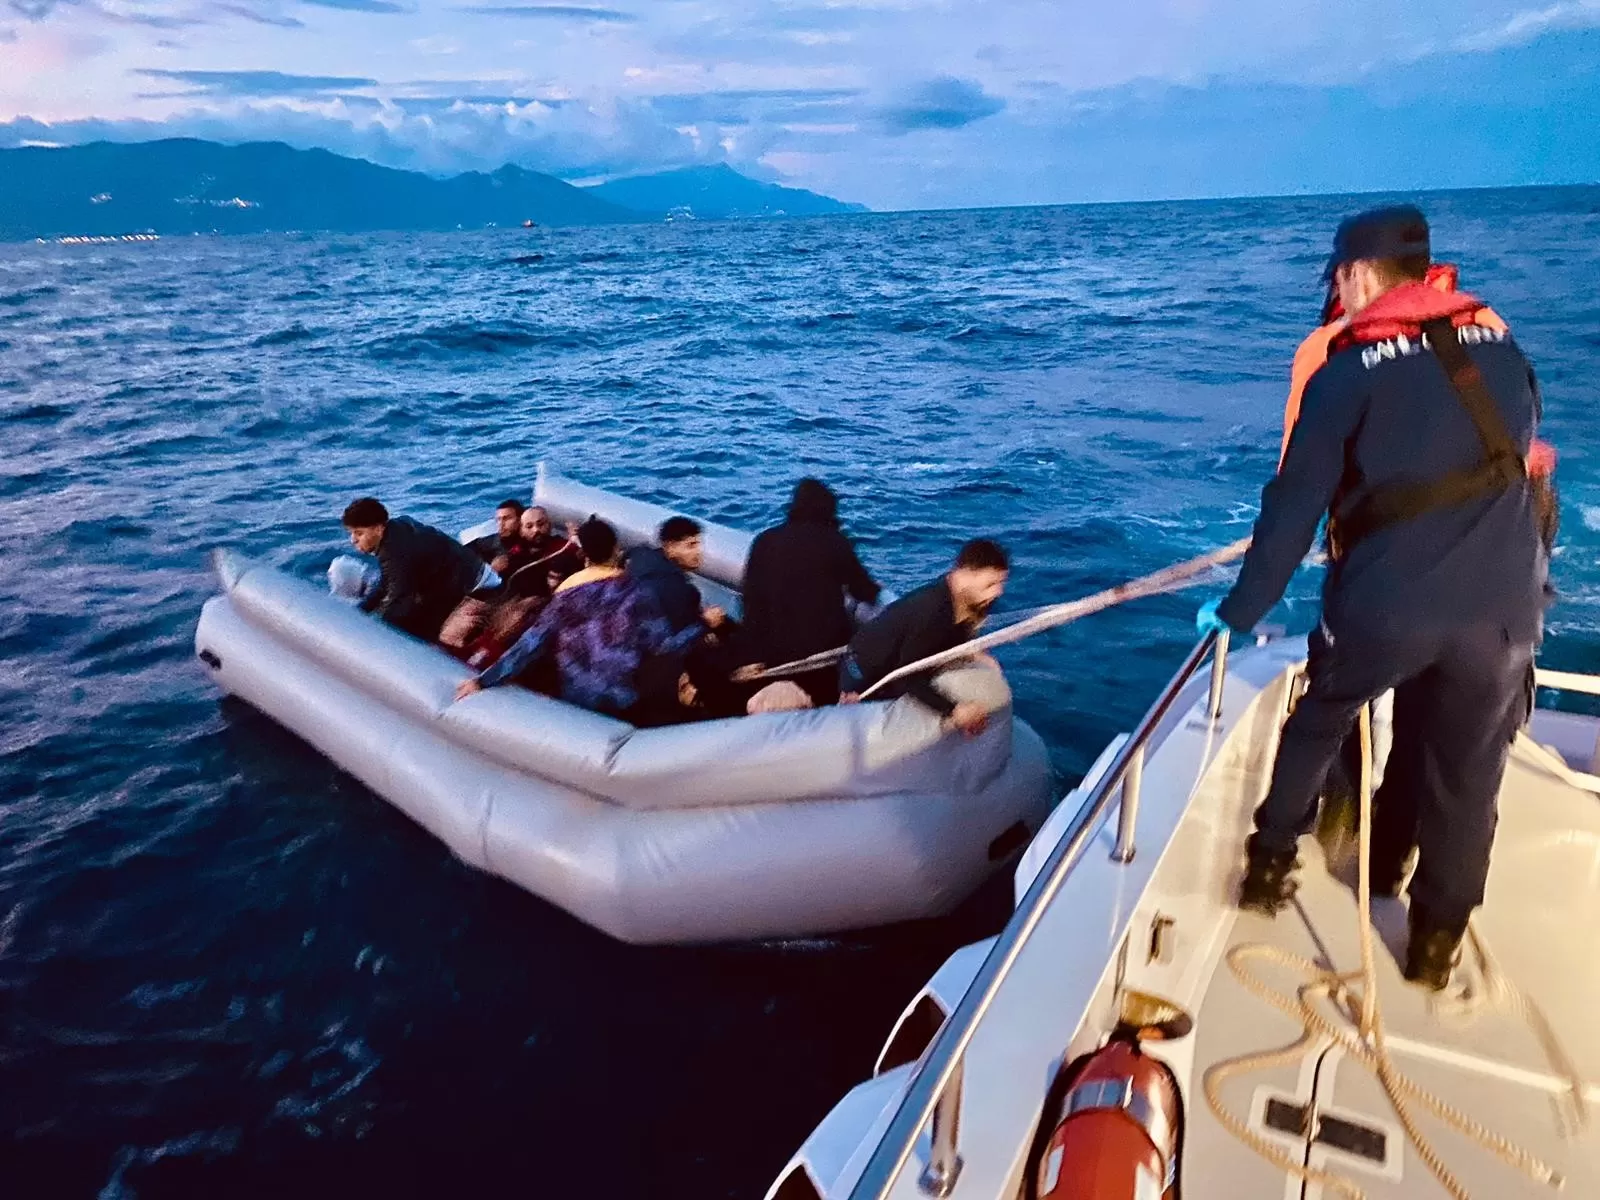 İzmir'in Seferihisar ve Çeşme ilçelerinde, Yunanistan unsurları tarafından Türk kara sularına geri itilen toplam 59 düzensiz göçmen, Sahil Güvenlik ekipleri tarafından kurtarıldı. 